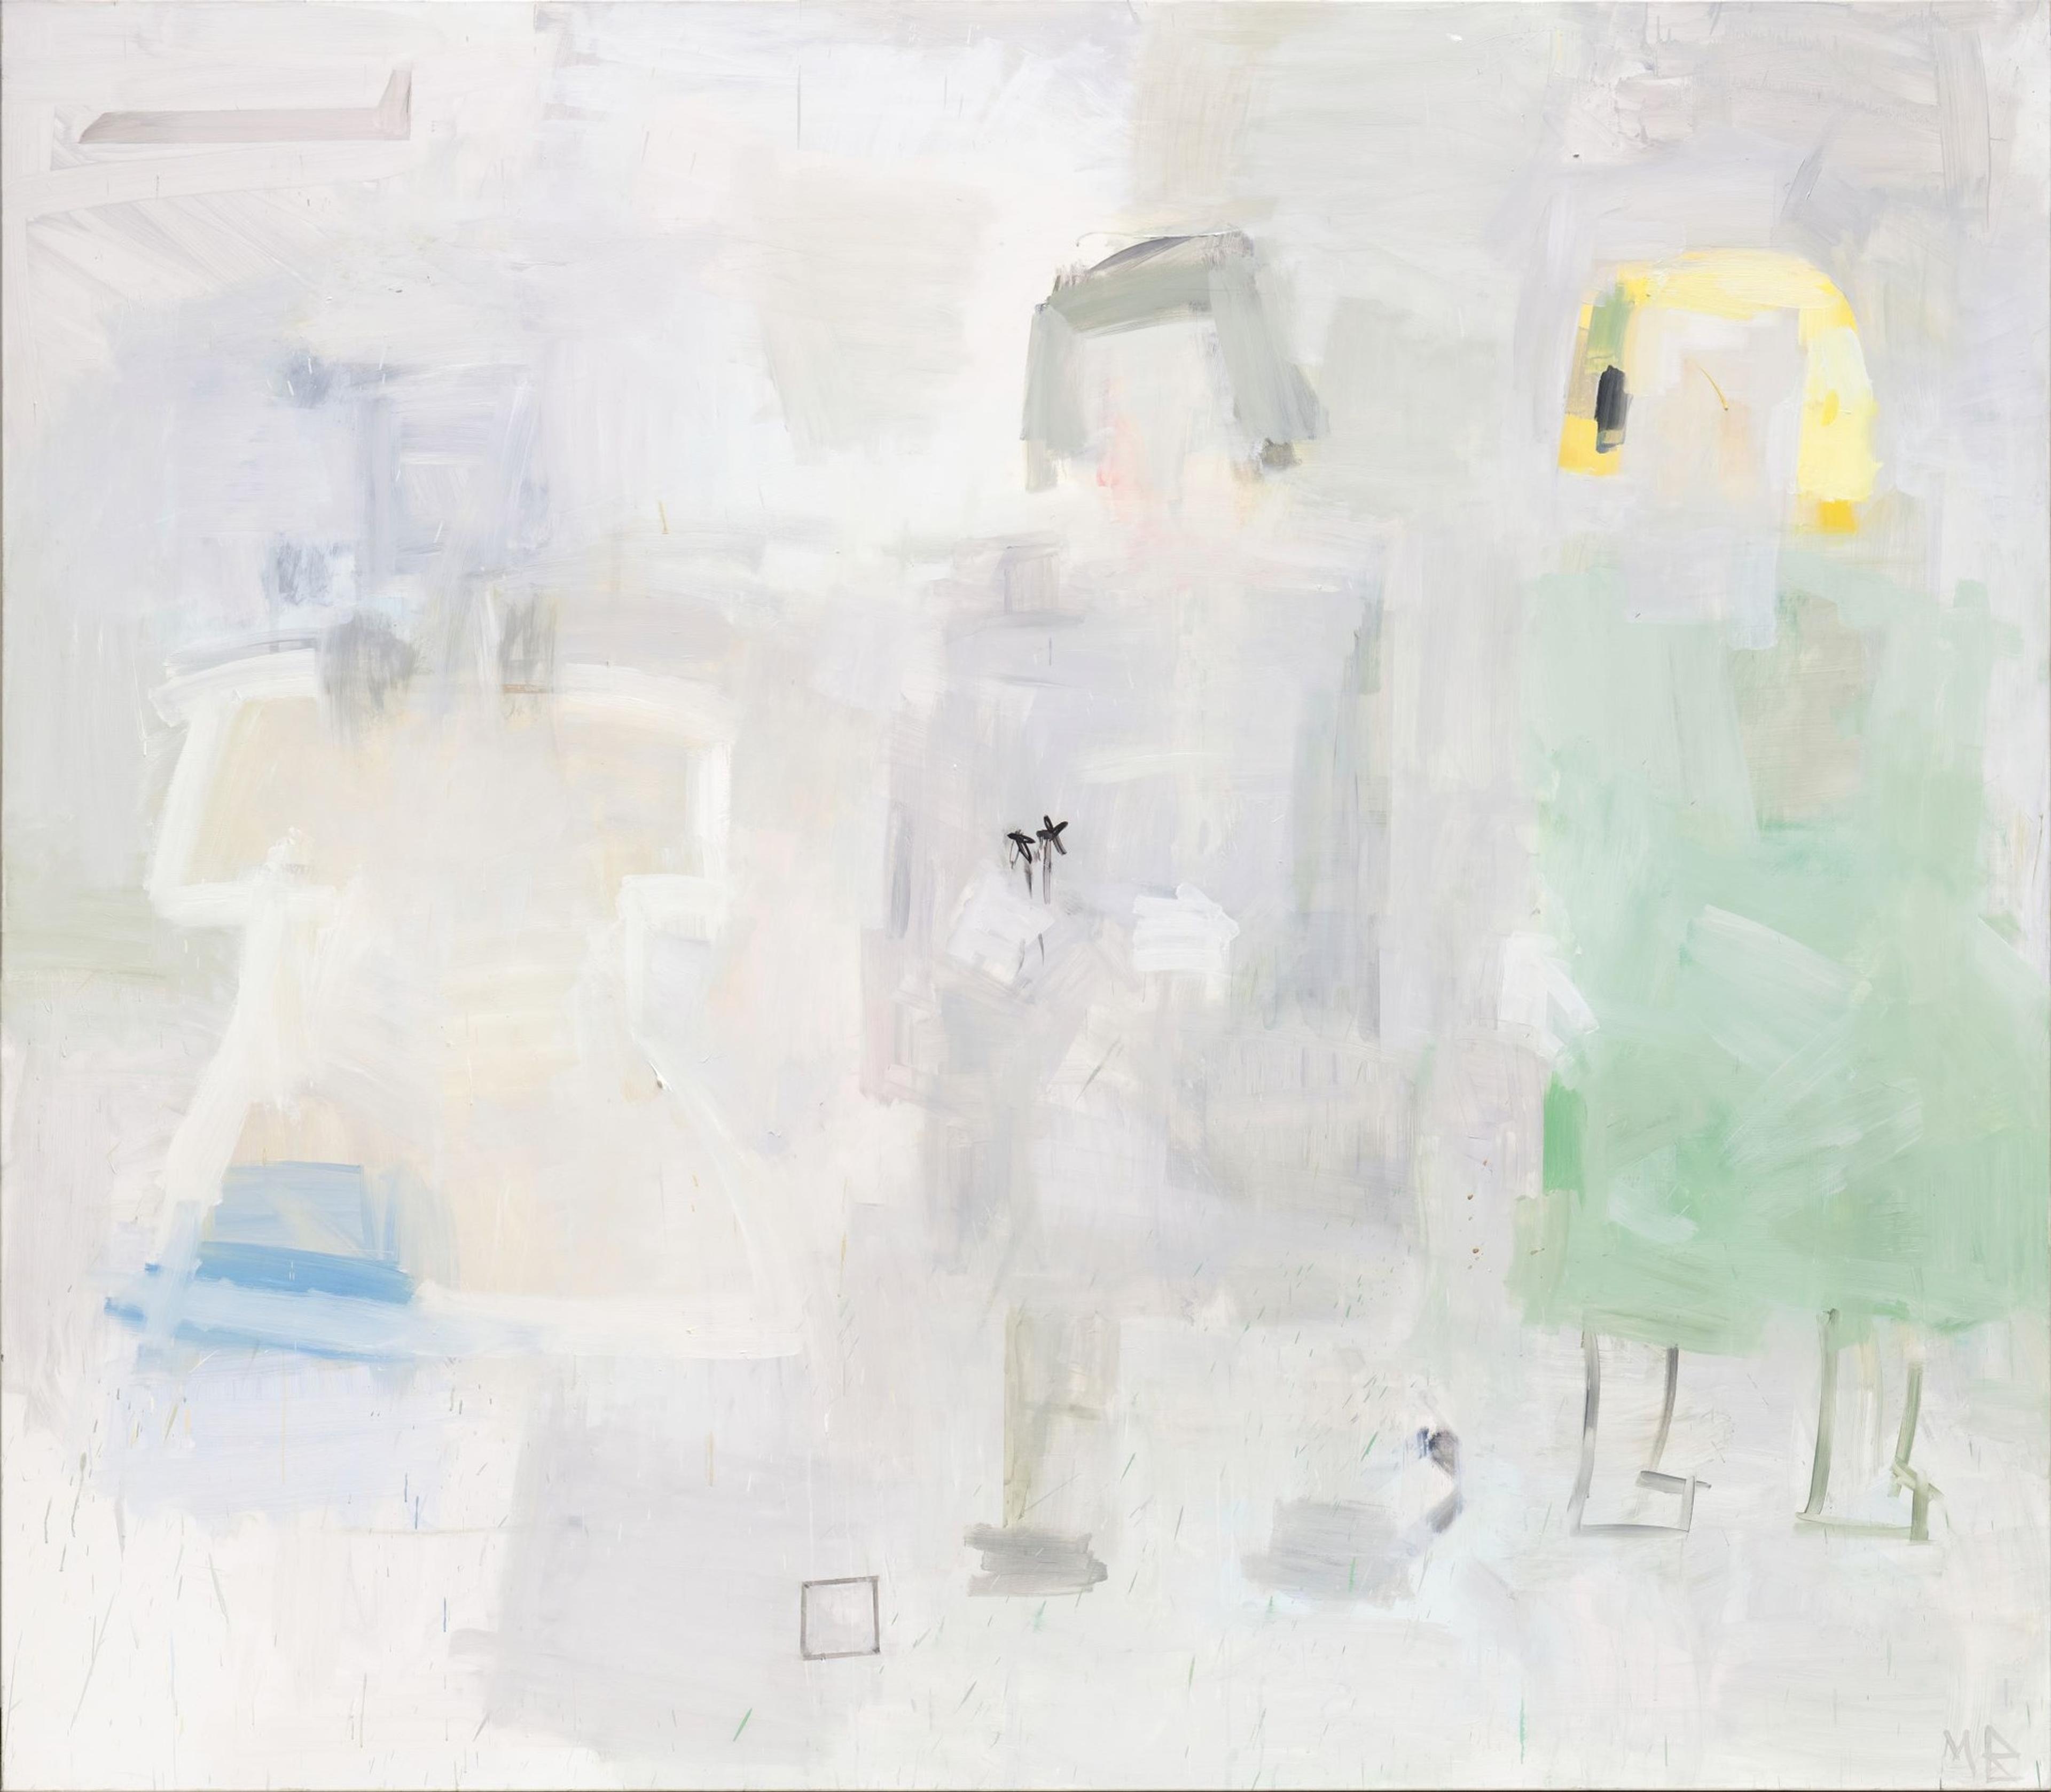 Et abstrahert maleri hvor vi kan skimte tre skikkelser som ligner barn, malt i lyse grå, lilla og grønne toner.